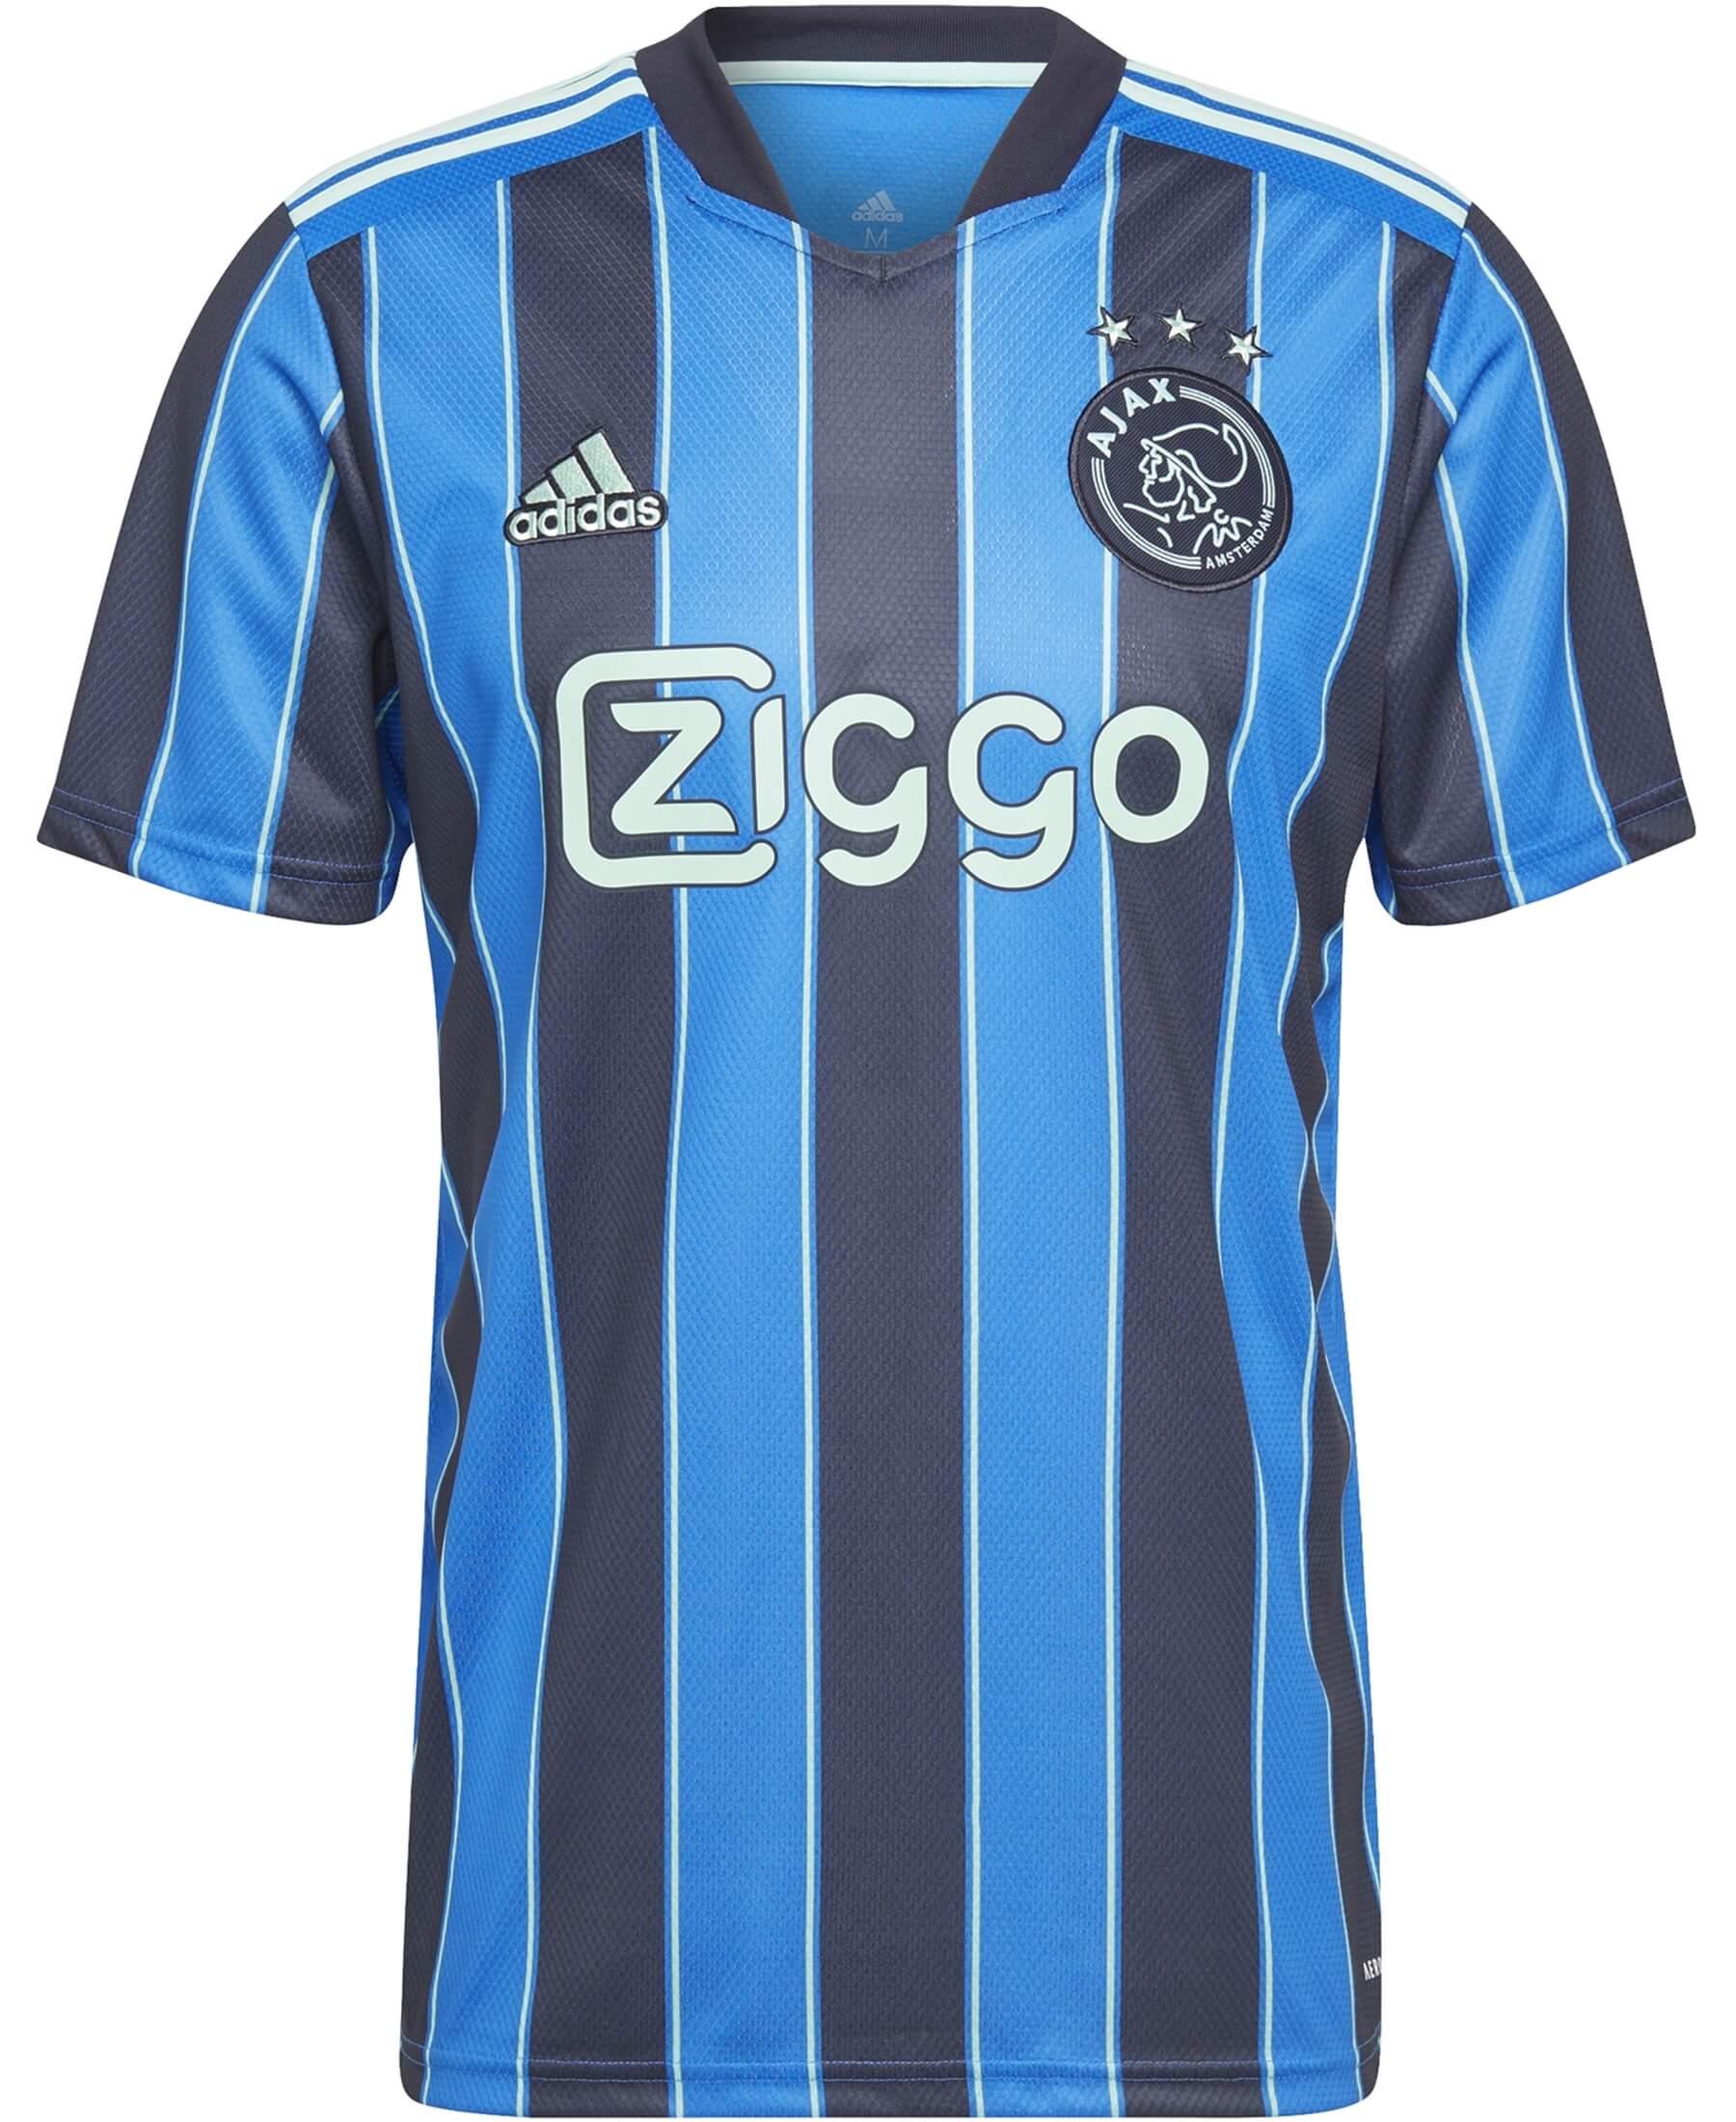 Adidas Ajax Amsterdam Auswärtstrikot 2021/2022 GT7130 - Jetzt bei SHOP4TEAMSPORT erhältlich. Offizielles Auswärtstrikot von Ajax Amsterdam für die Saison 2021/2022. Unterstütze deinen Lieblingsverein mit diesem hochwertigen Trikot. Bestelle jetzt und zeige deine Verbundenheit zu Ajax Amsterdam.